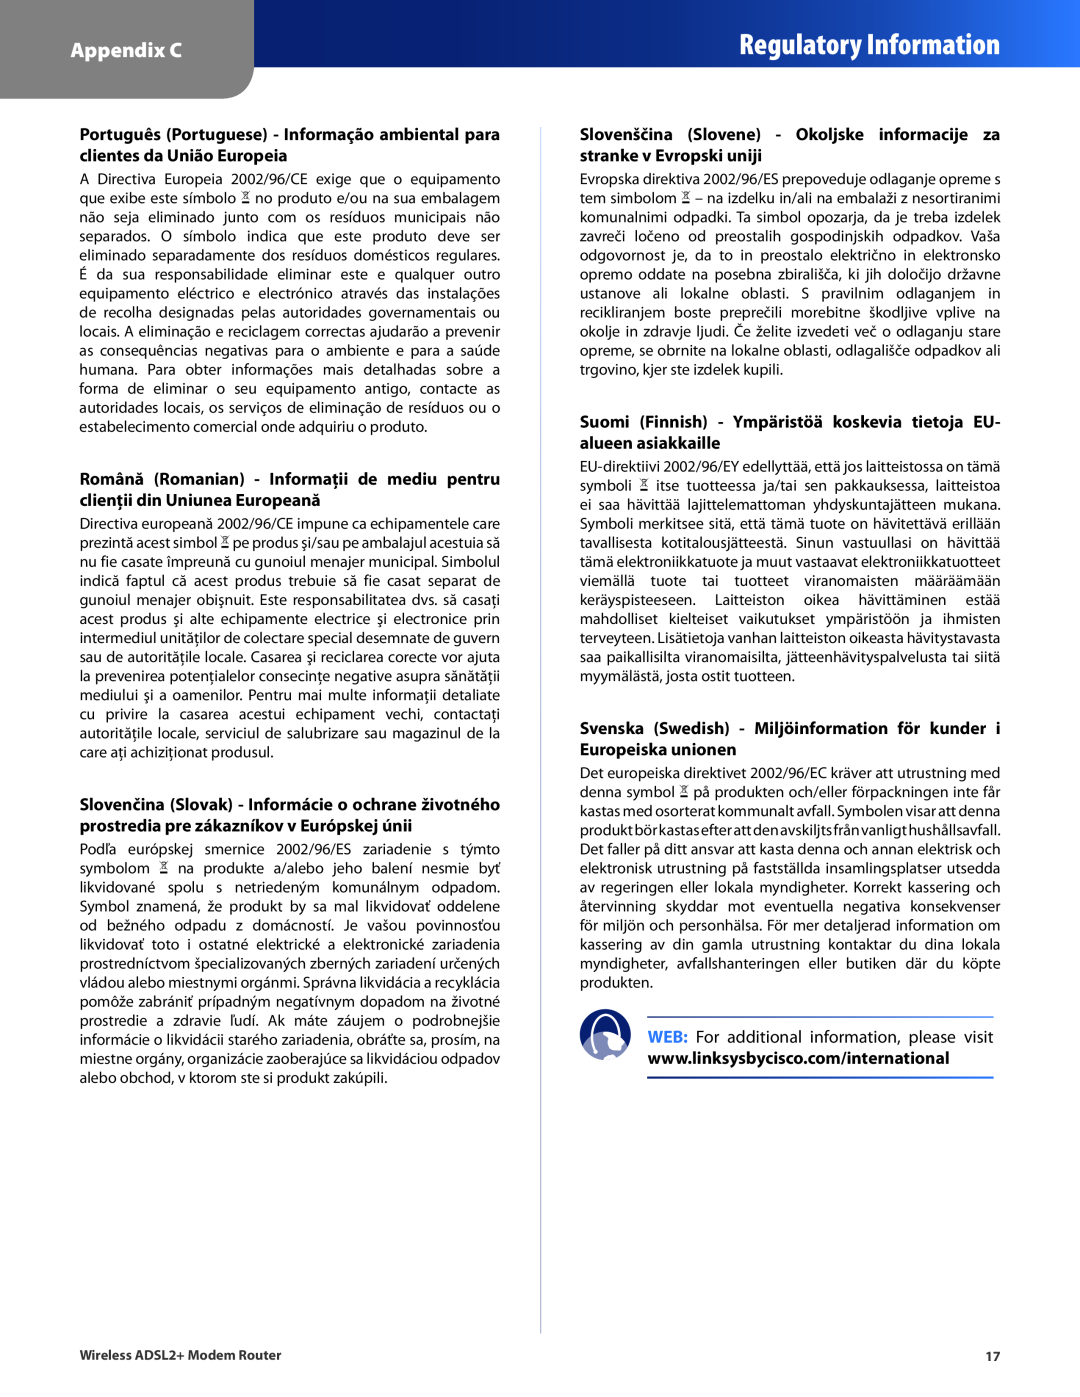 Linksys WAG120N Regulatory Information, Appendix C, Suomi Finnish - Ympäristöä koskevia tietoja EU- alueen asiakkaille 